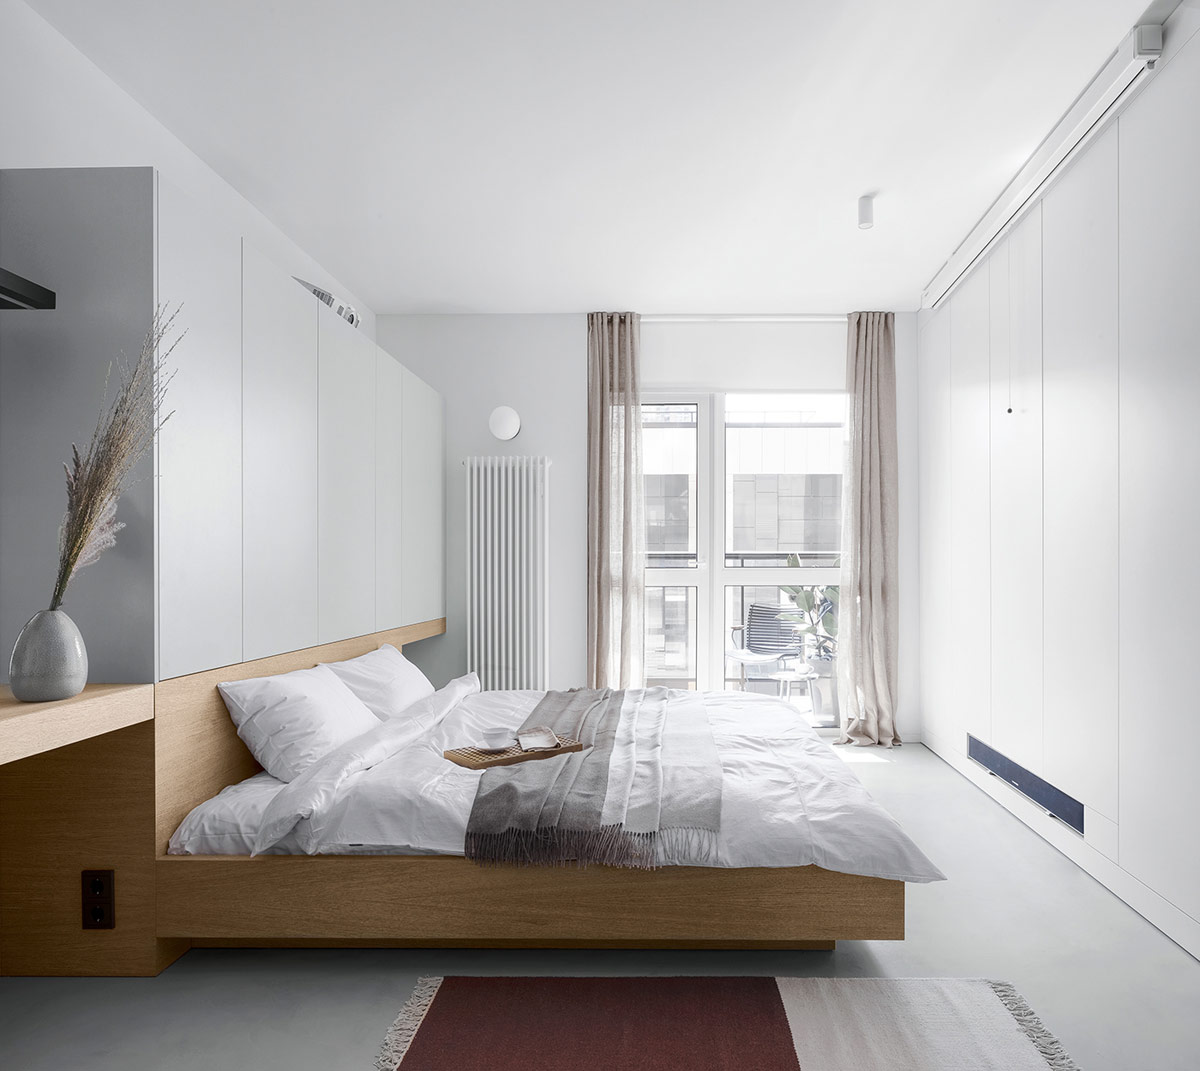 hình ảnh phòng ngủ thoáng sáng, tông màu trắng chủ đạo, giường gỗ, rèm cửa, sổ kính lớn mở ra ban công